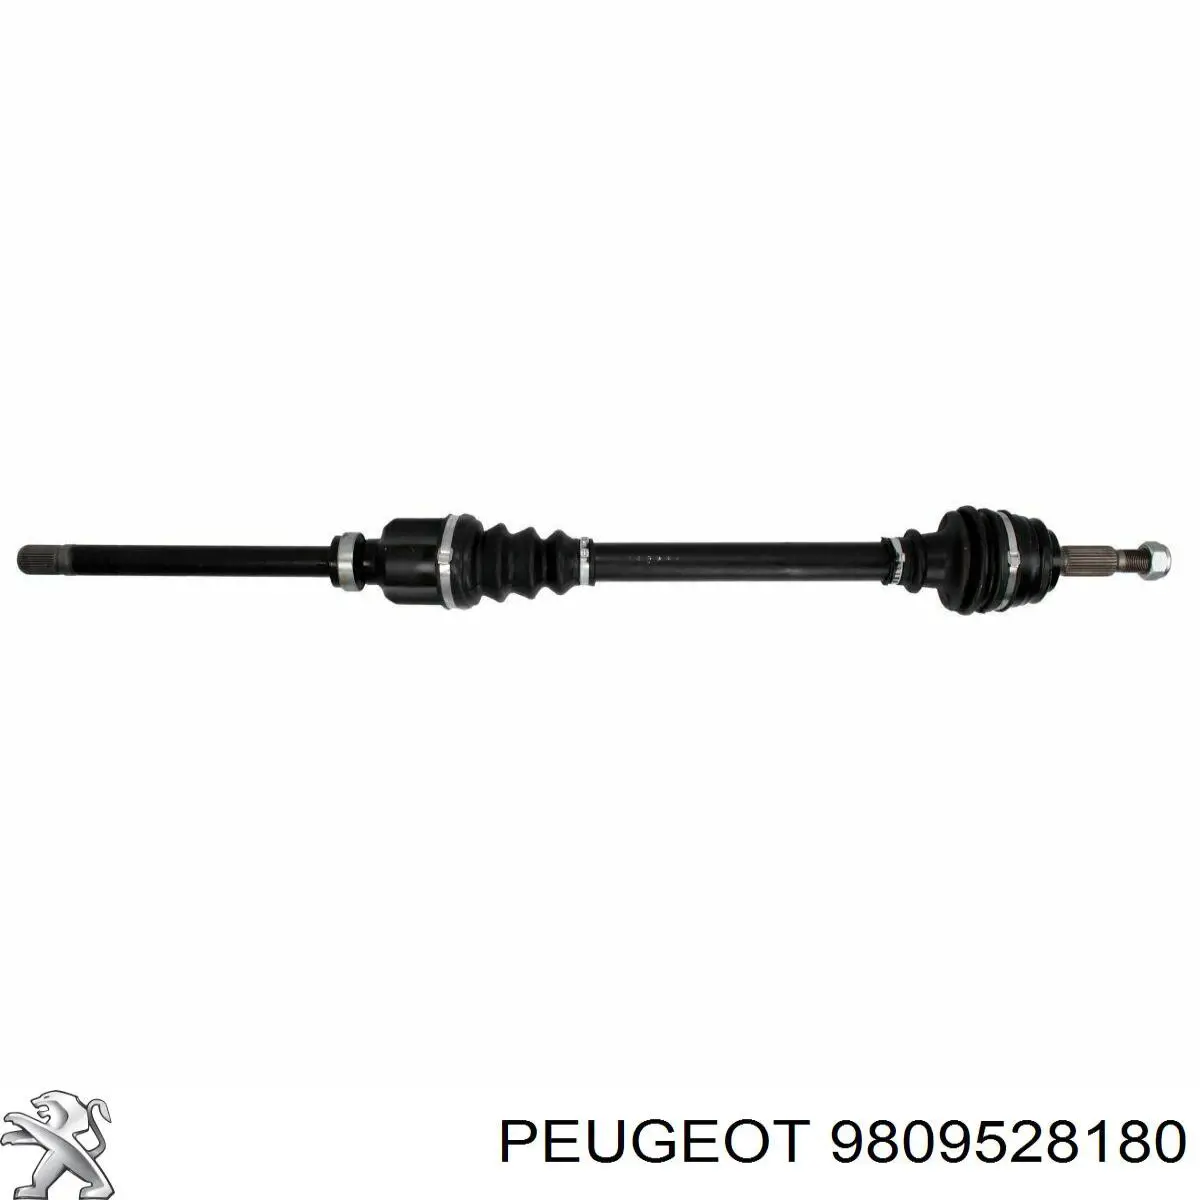 9809528180 Peugeot/Citroen árbol de transmisión delantero derecho